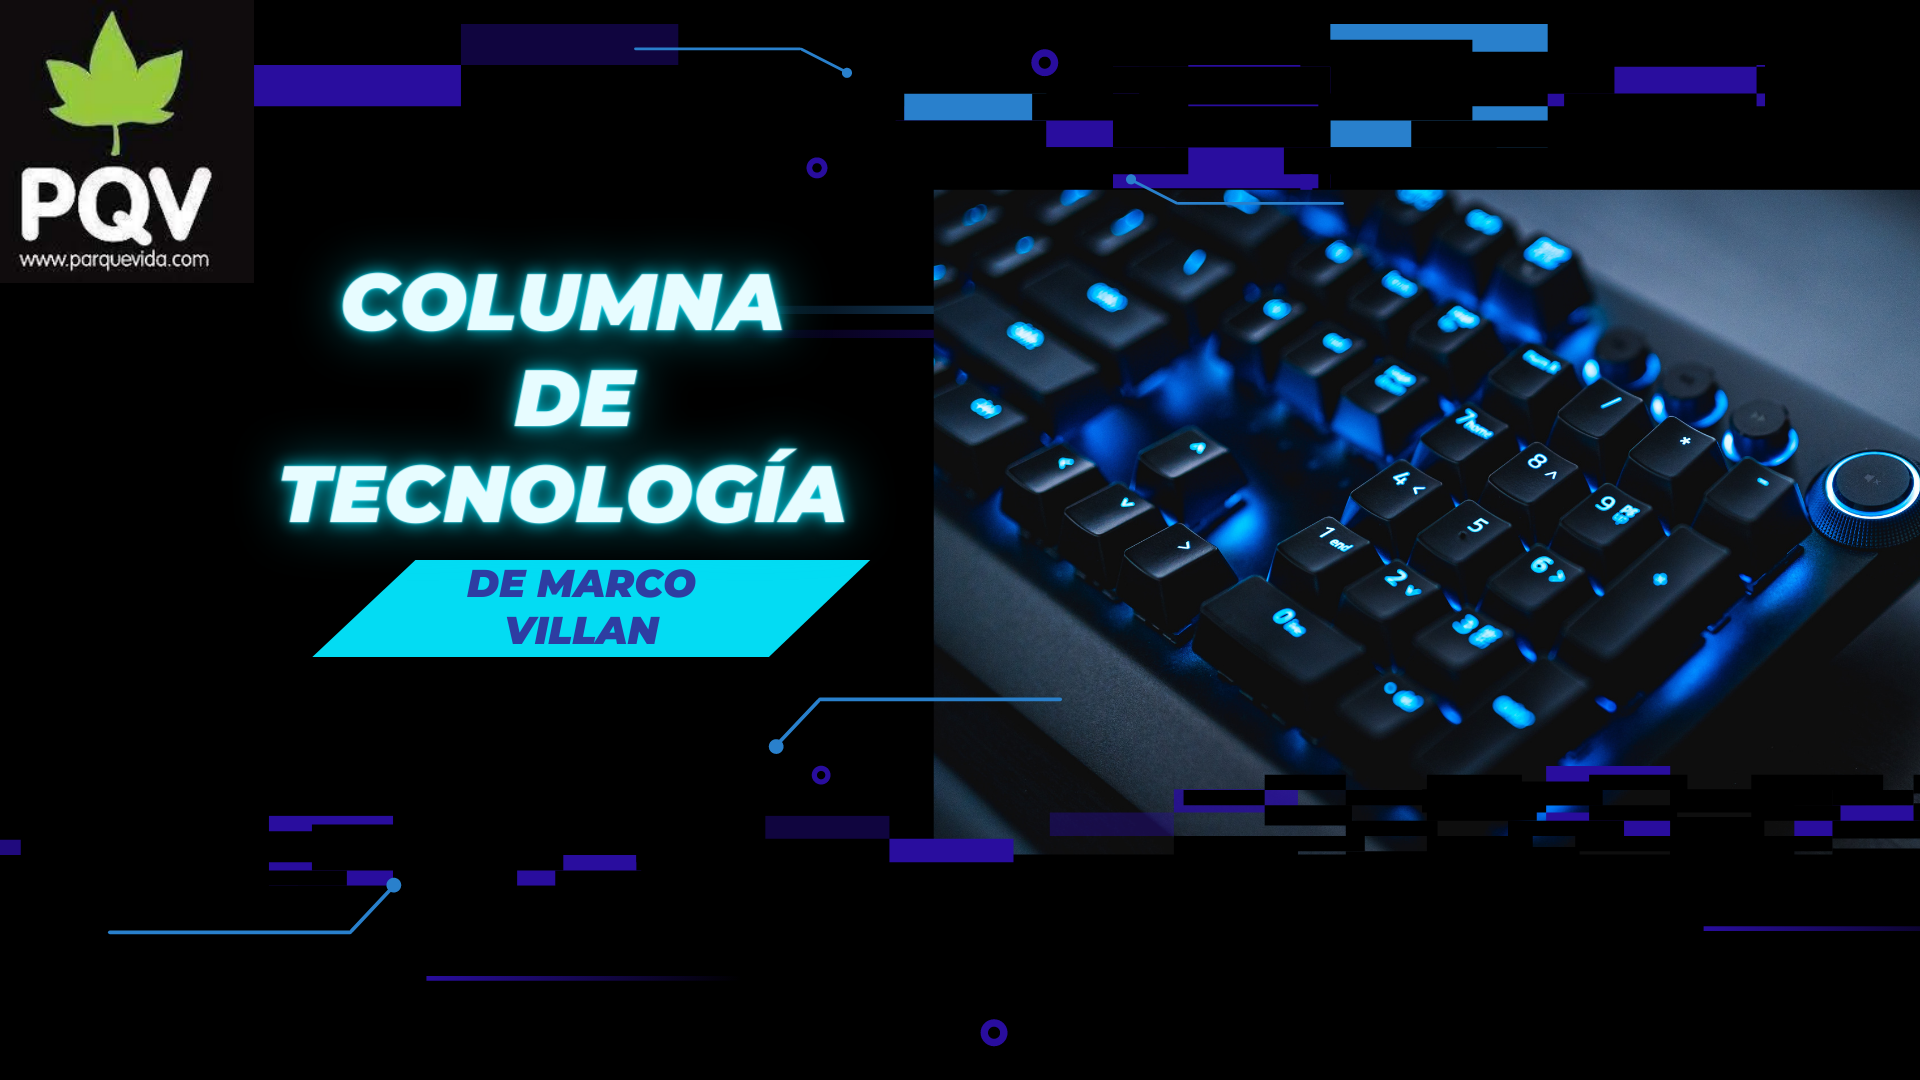 Negro-y-Azul-Neon-Tecnologia-Promocion-en-Linea-Video-de-Promocion-de-Ciber-Lunes